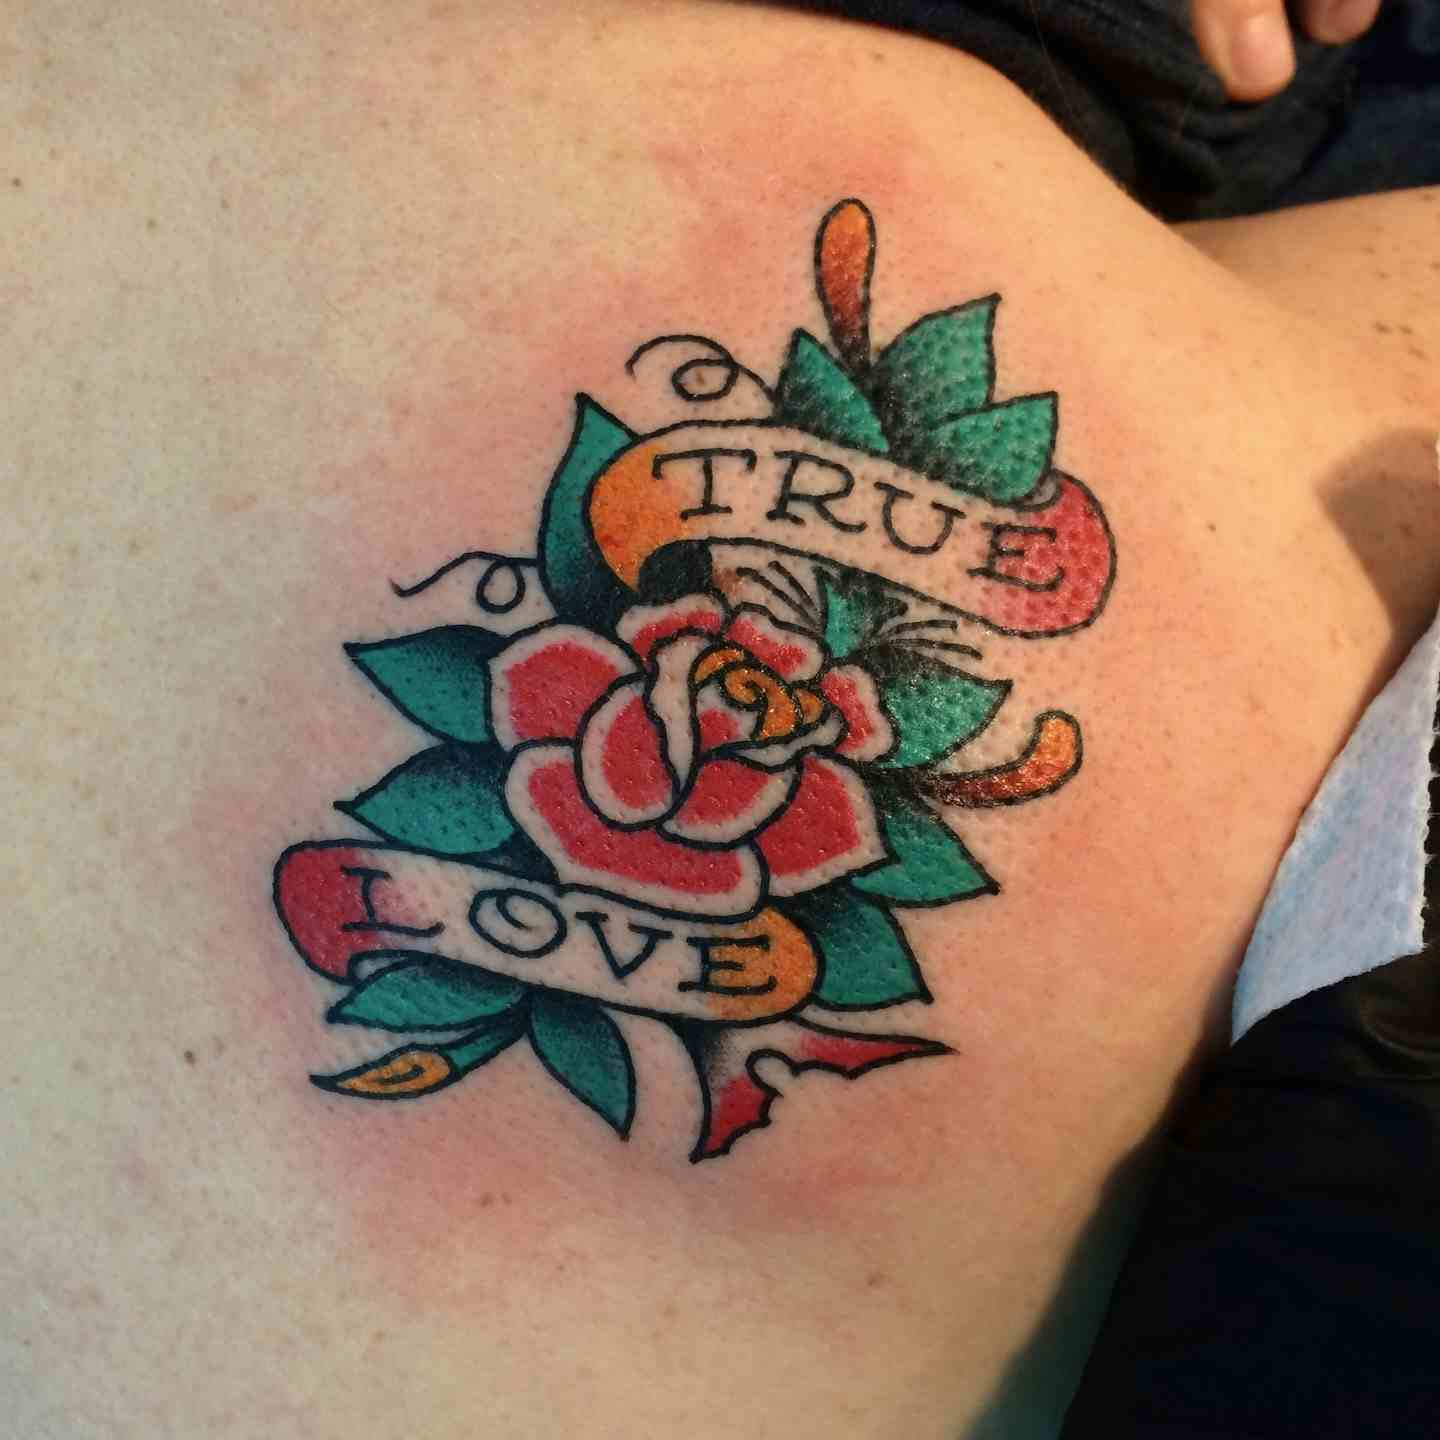 True love tattoo